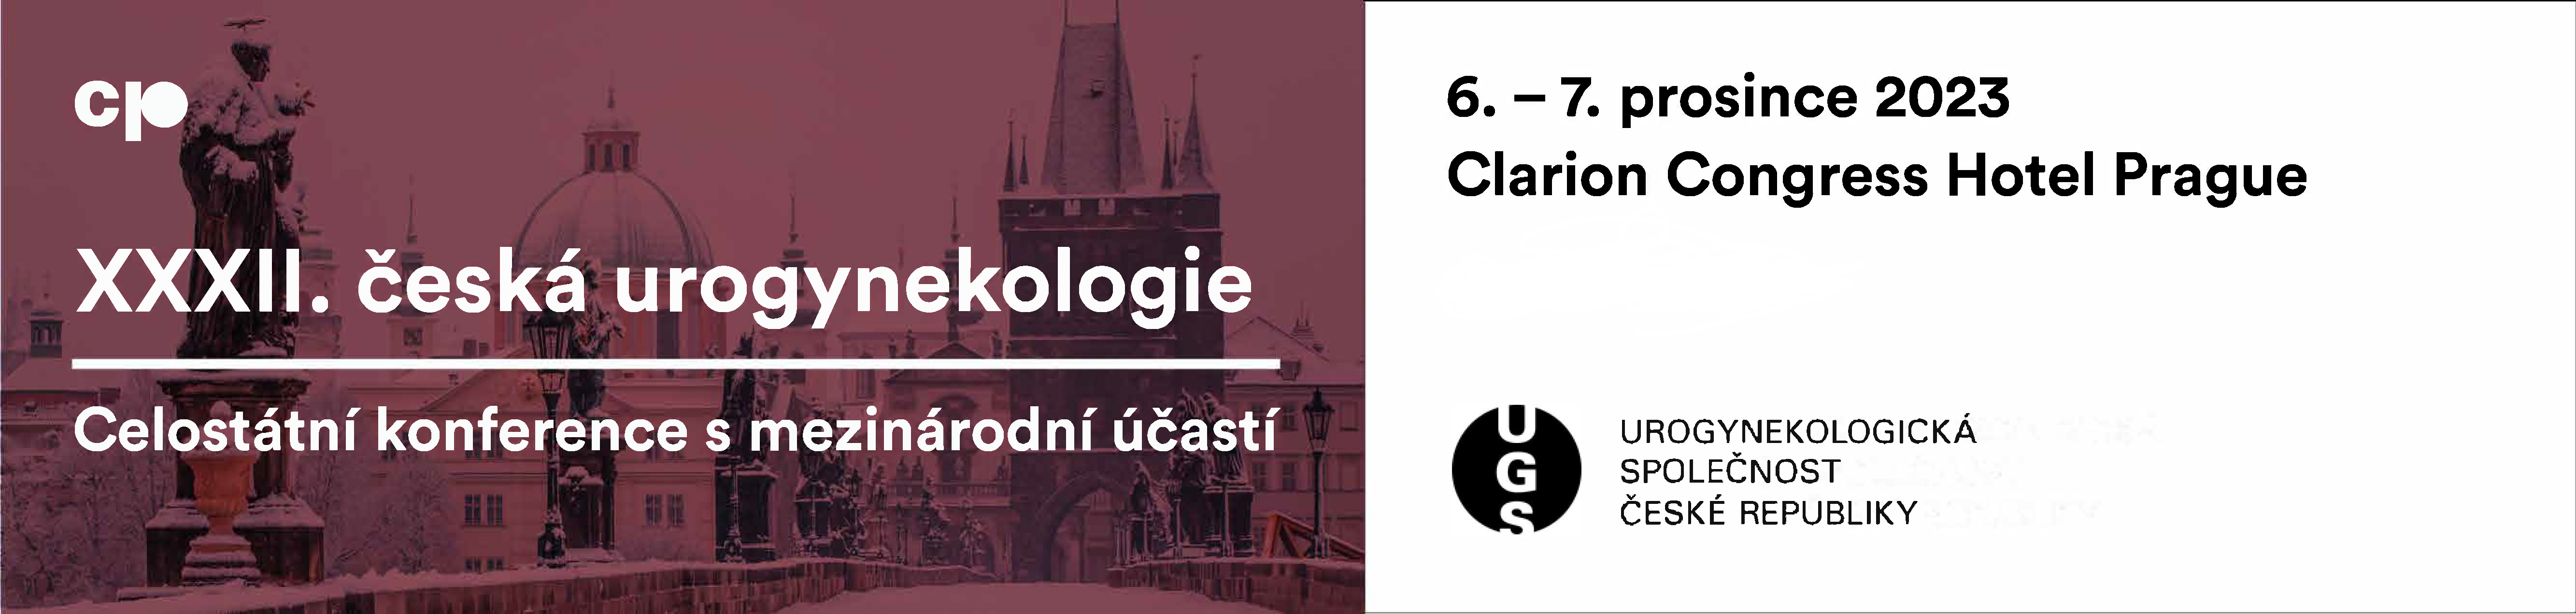 XXXII. česká urogynekologie